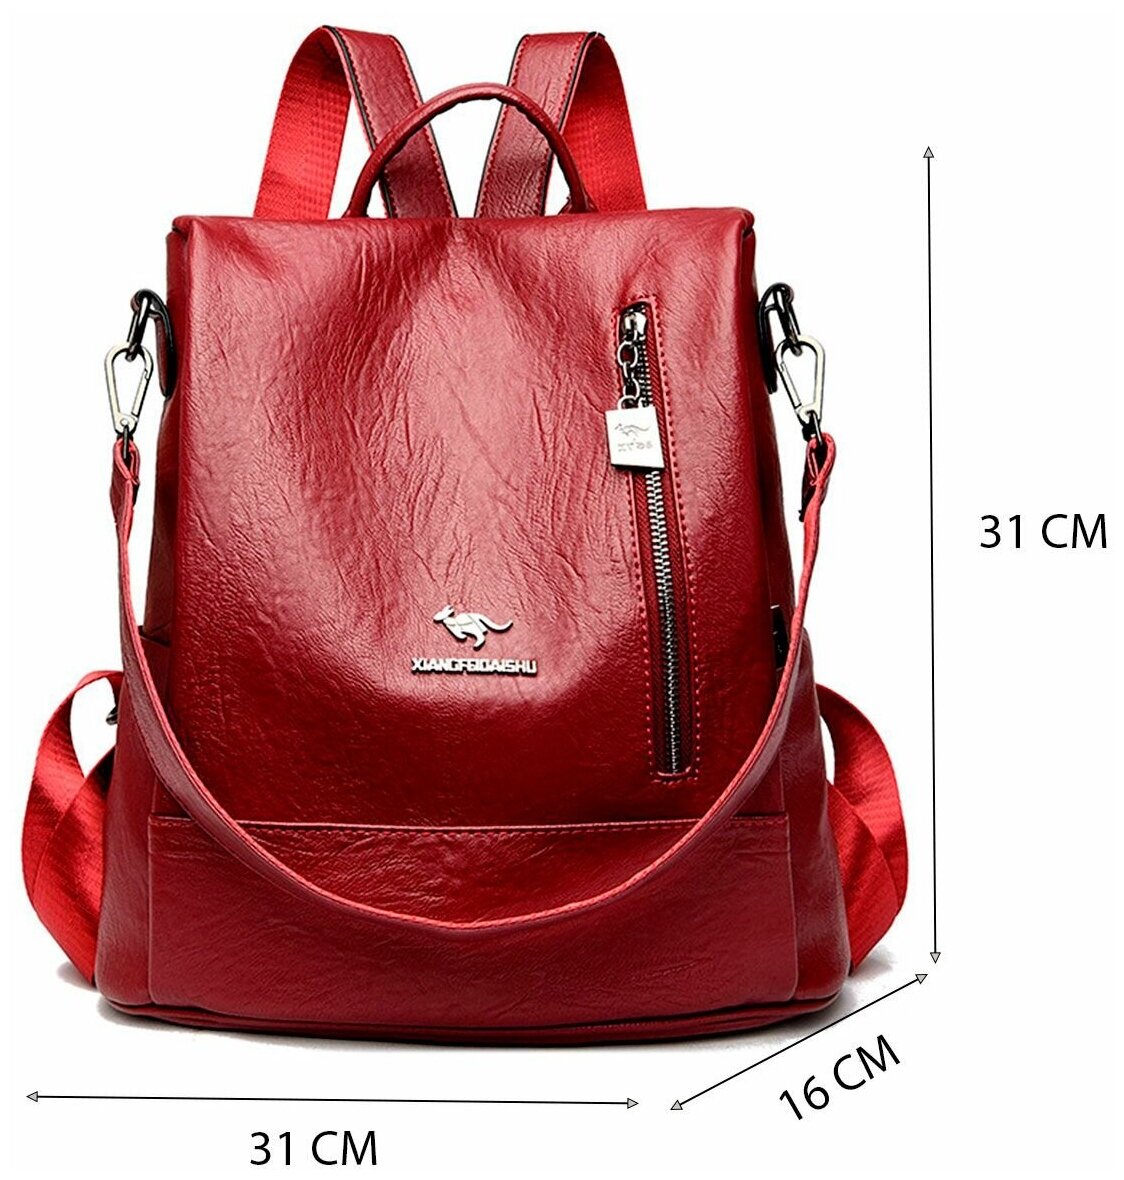 Рюкзак женский бордового цвета, рюкзак бордовый, рюкзак женский, рюкзак женский спортивный, женский городской рюкзак, рюкзак женский